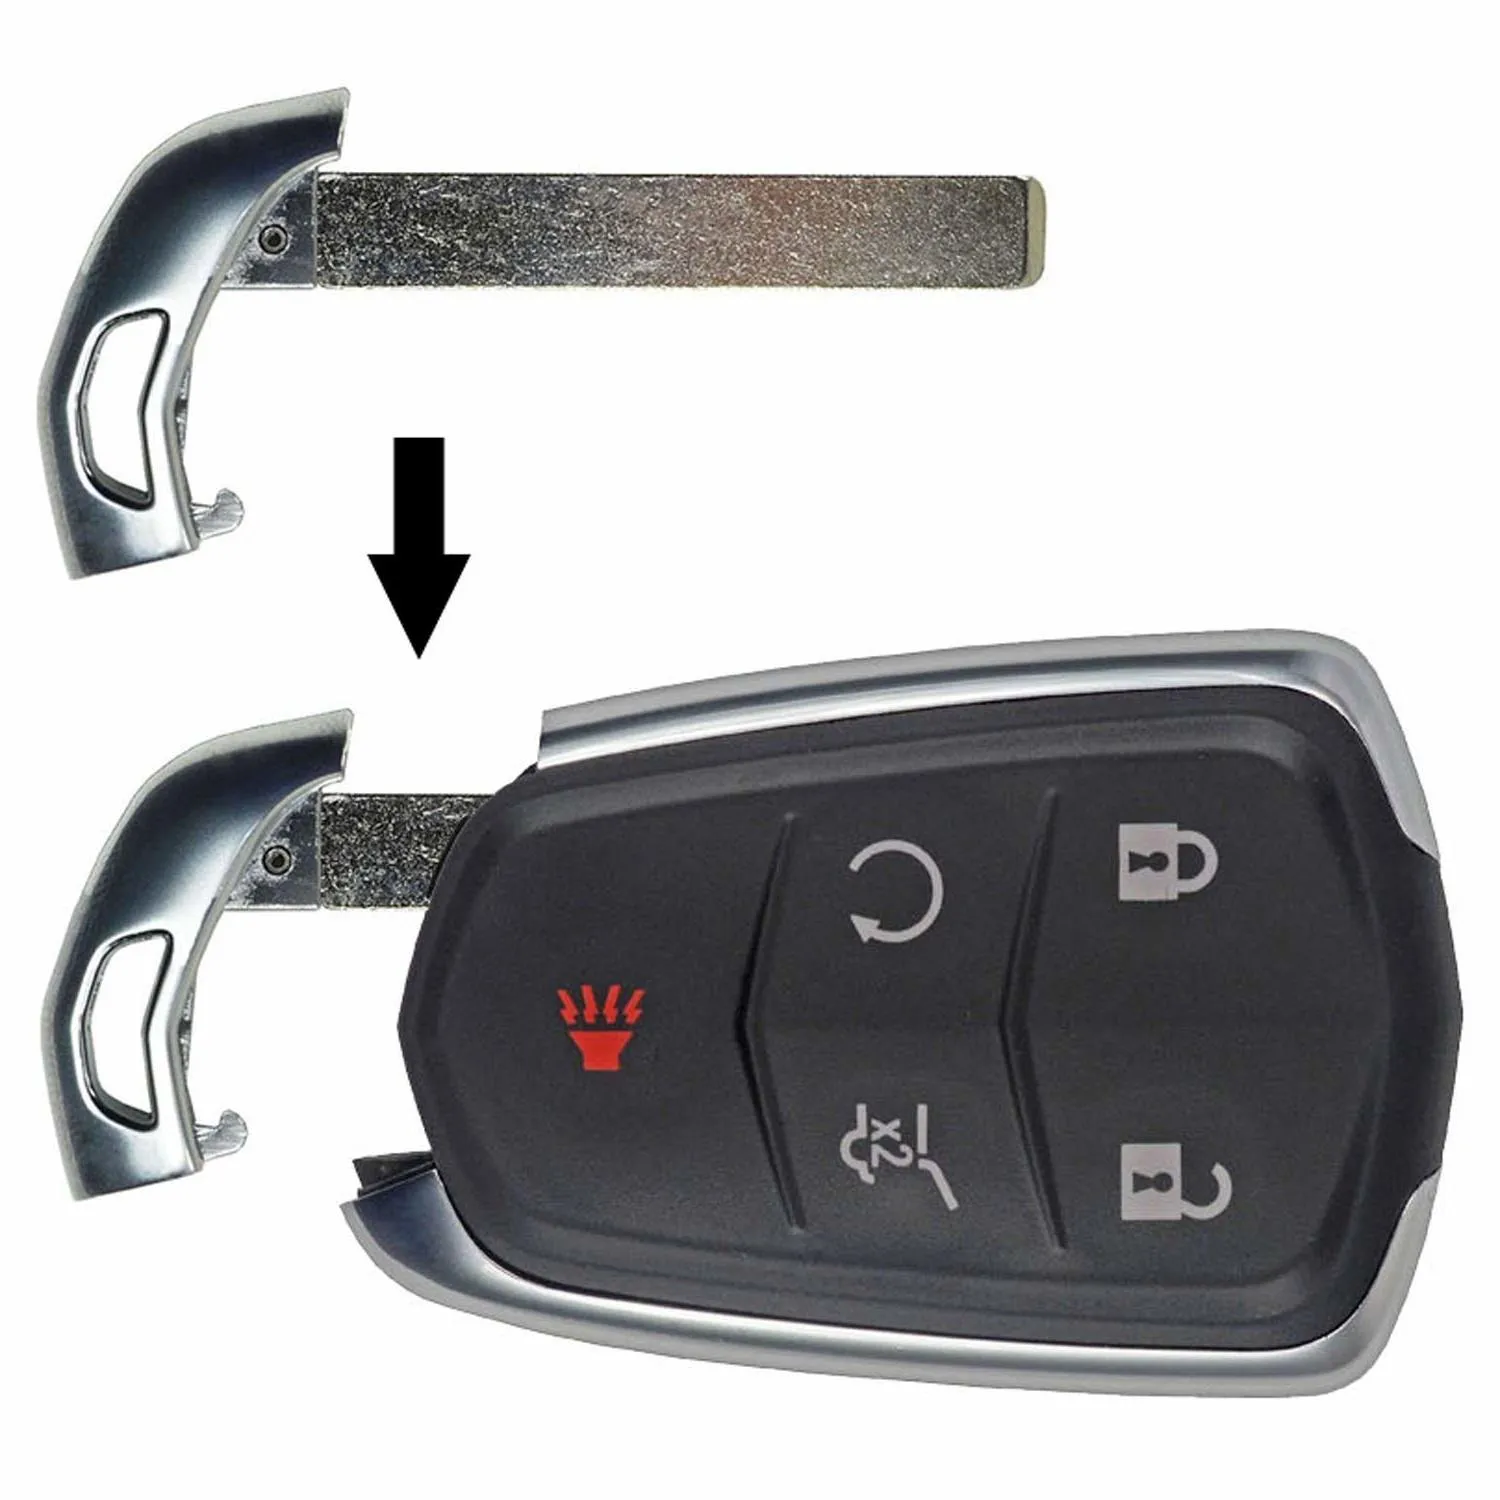 Hidden Emergency Metal Keys Inside Smart Key Fobs